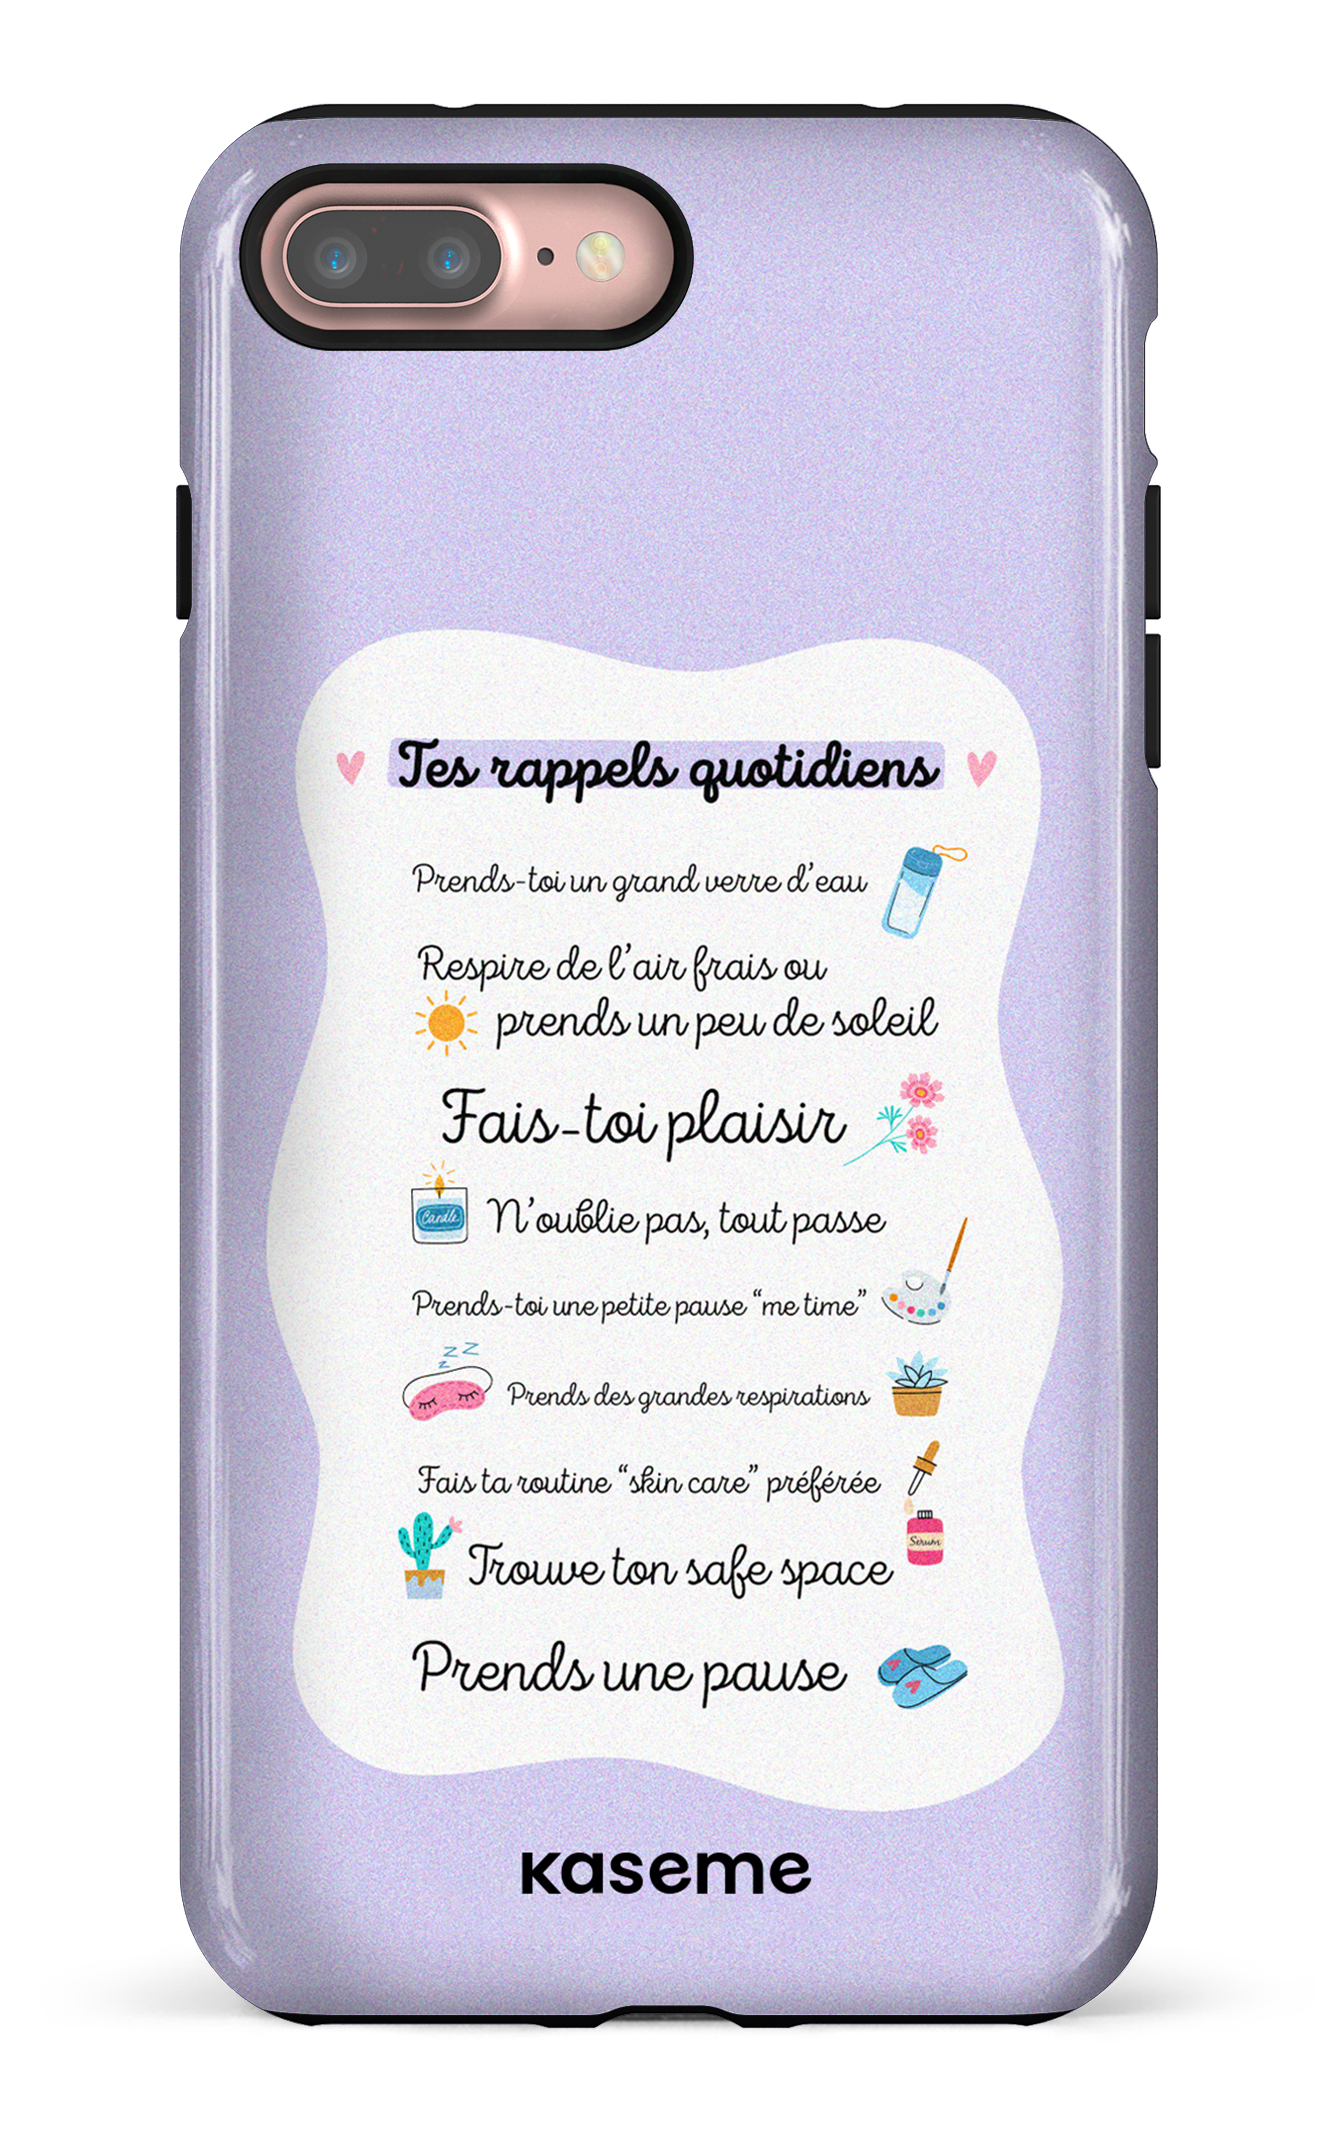 Tes rappels quotidiens purple - iPhone 7 Plus